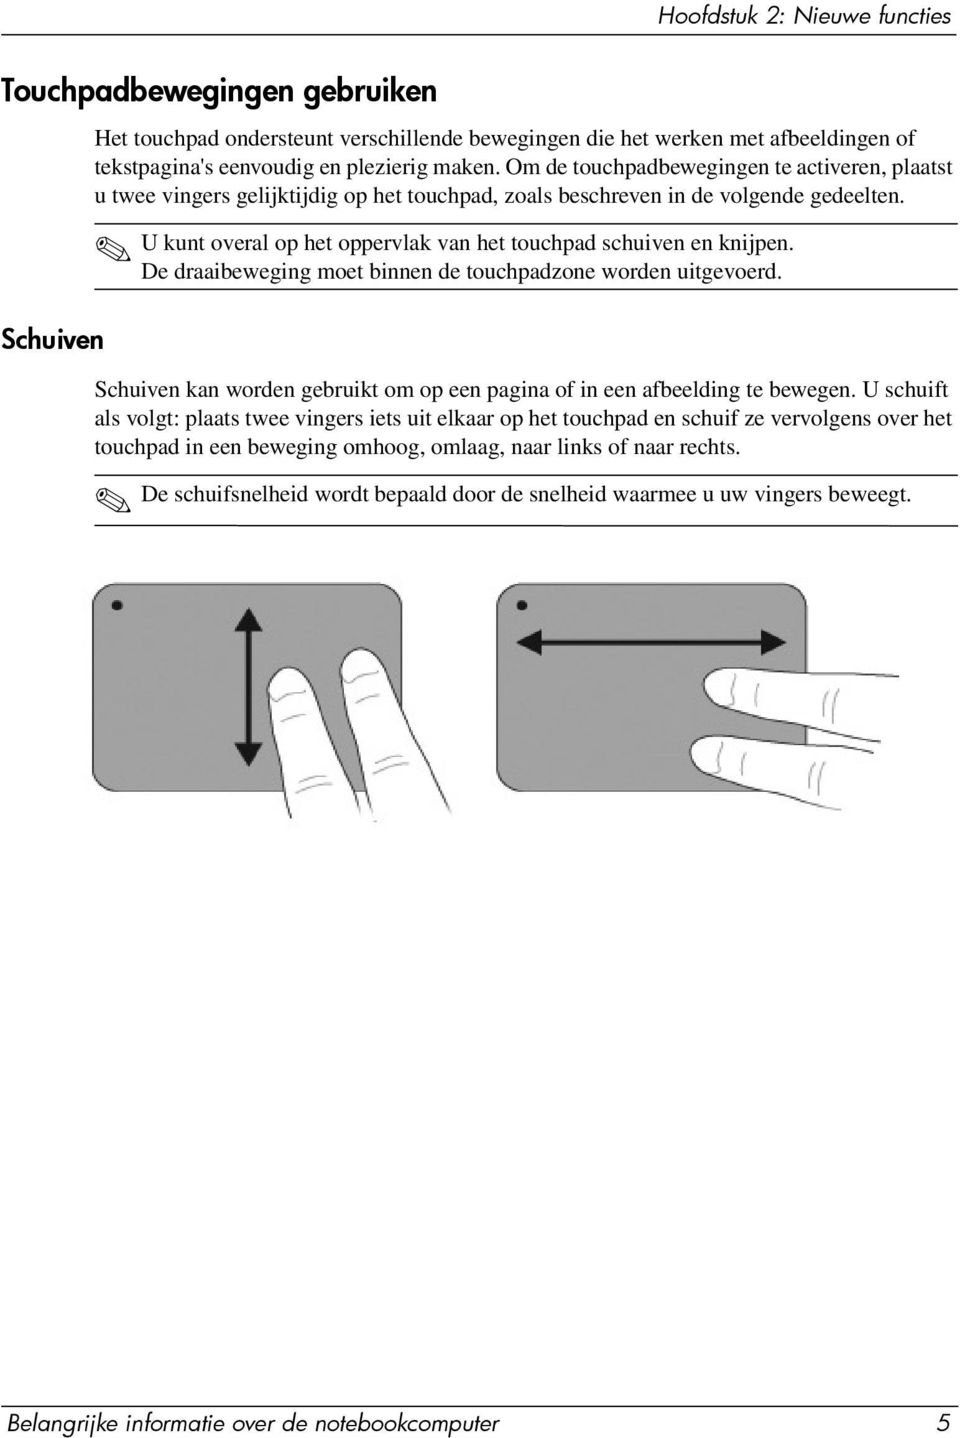 U kunt overal op het oppervlak van het touchpad schuiven en knijpen. De draaibeweging moet binnen de touchpadzone worden uitgevoerd.